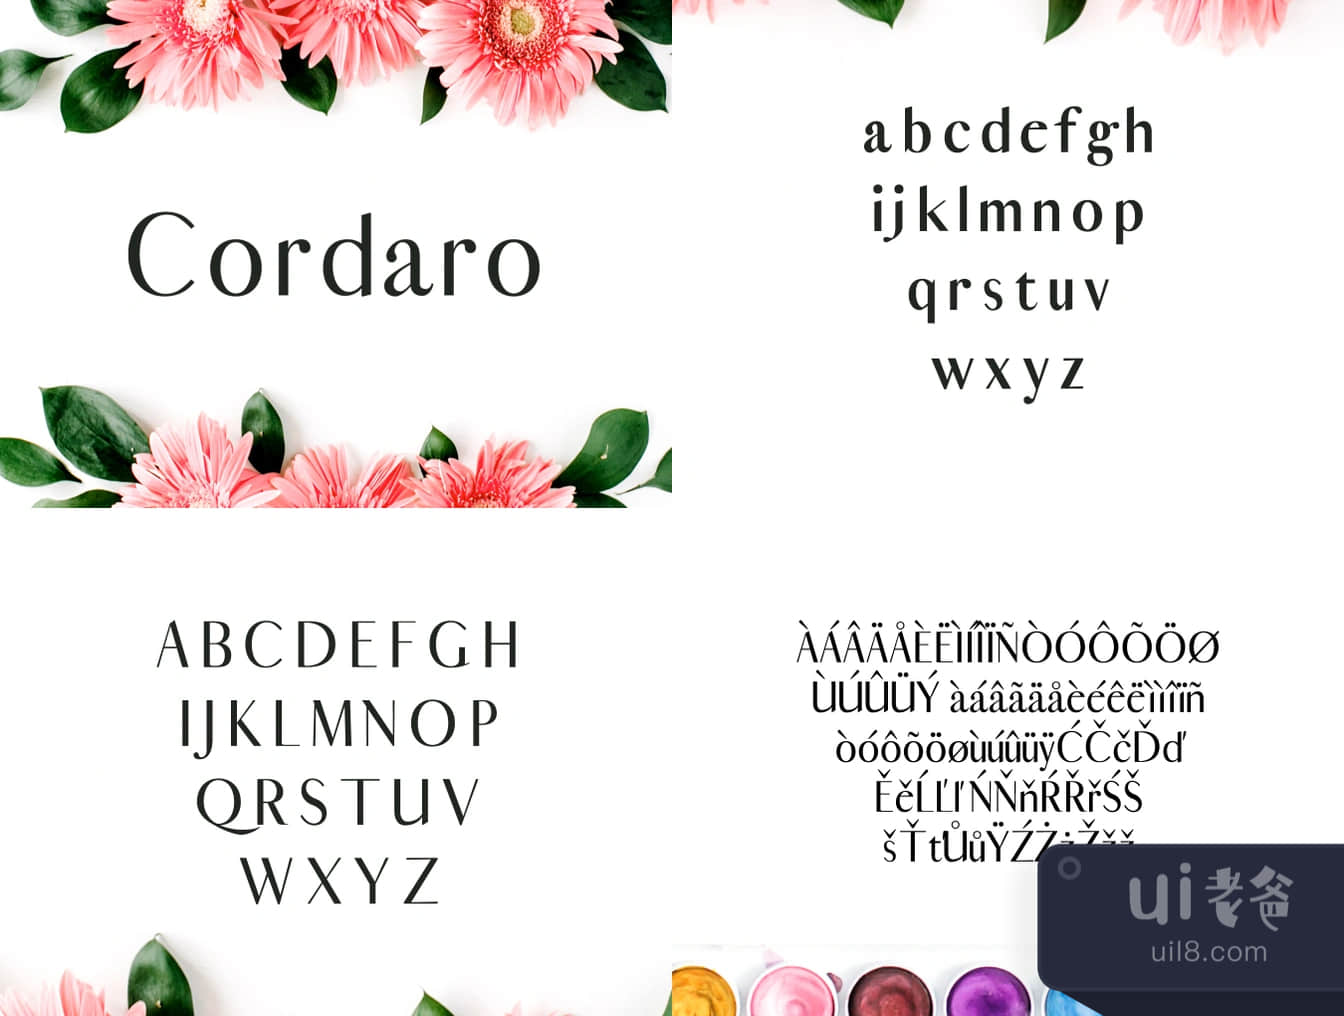 科达罗无衬线字体 (Cordaro Sans Serif Typeface)插图